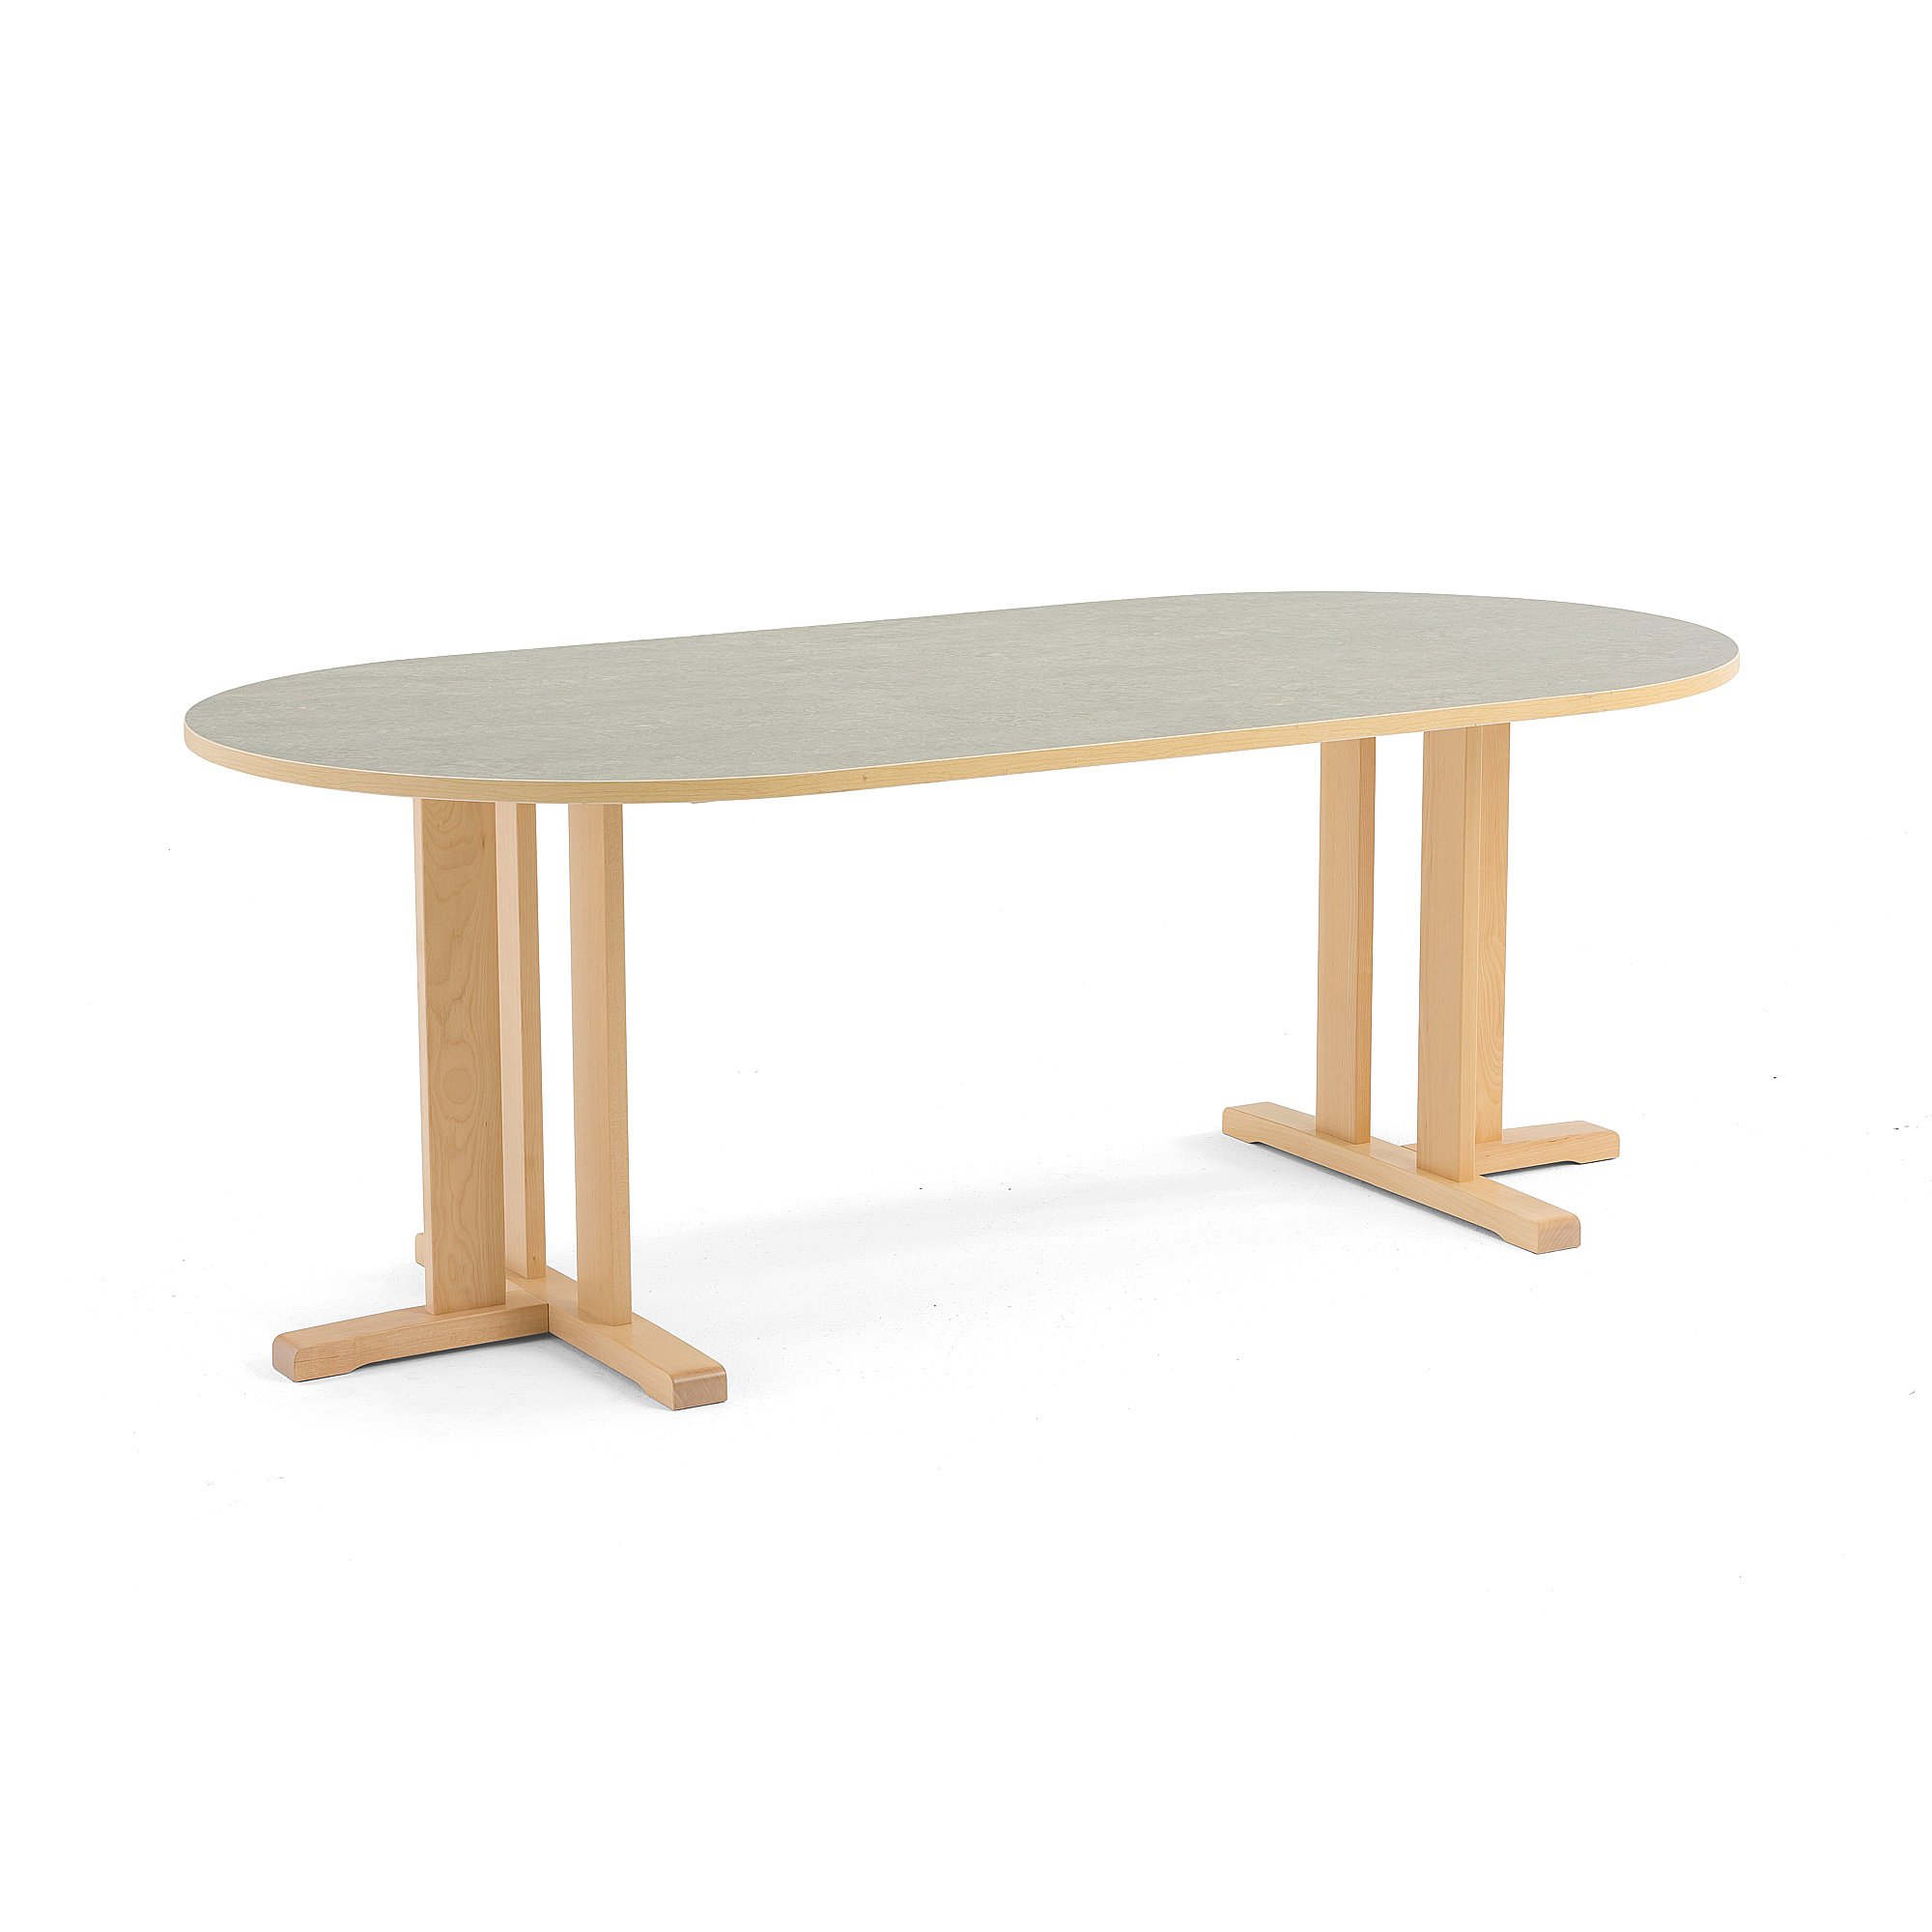 Stůl KUPOL, 2000x1000x720 mm, oválný, akustické linoleum, bříza/šedá